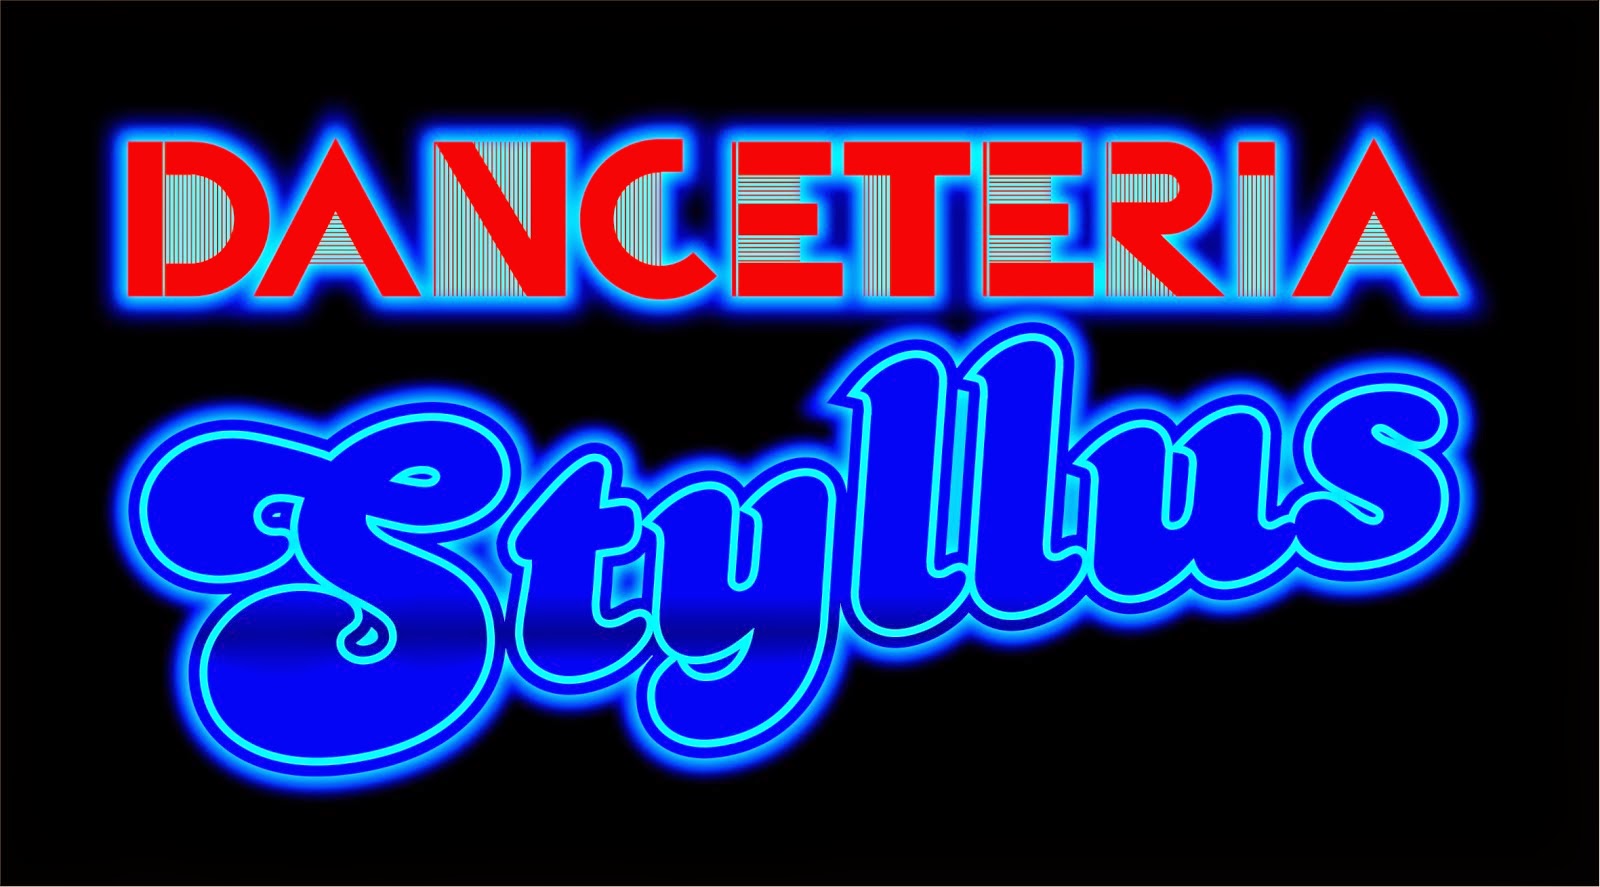 Danceteria Styllus